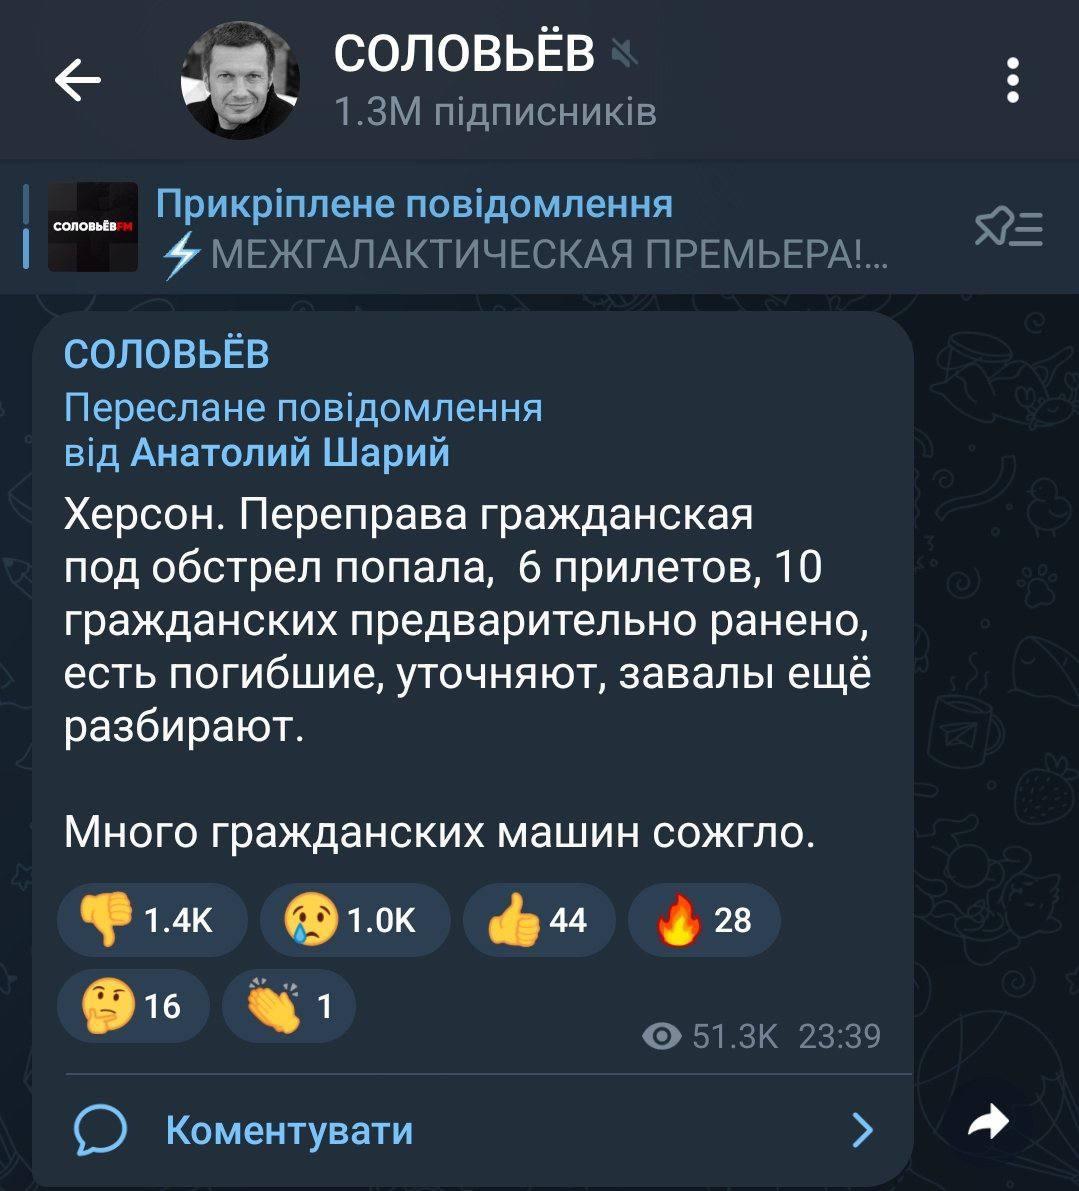 Пропагандисты уже начали "работать по методичкам" Кремля и сообщать о якобы "ударах по гражданским" / скриншот